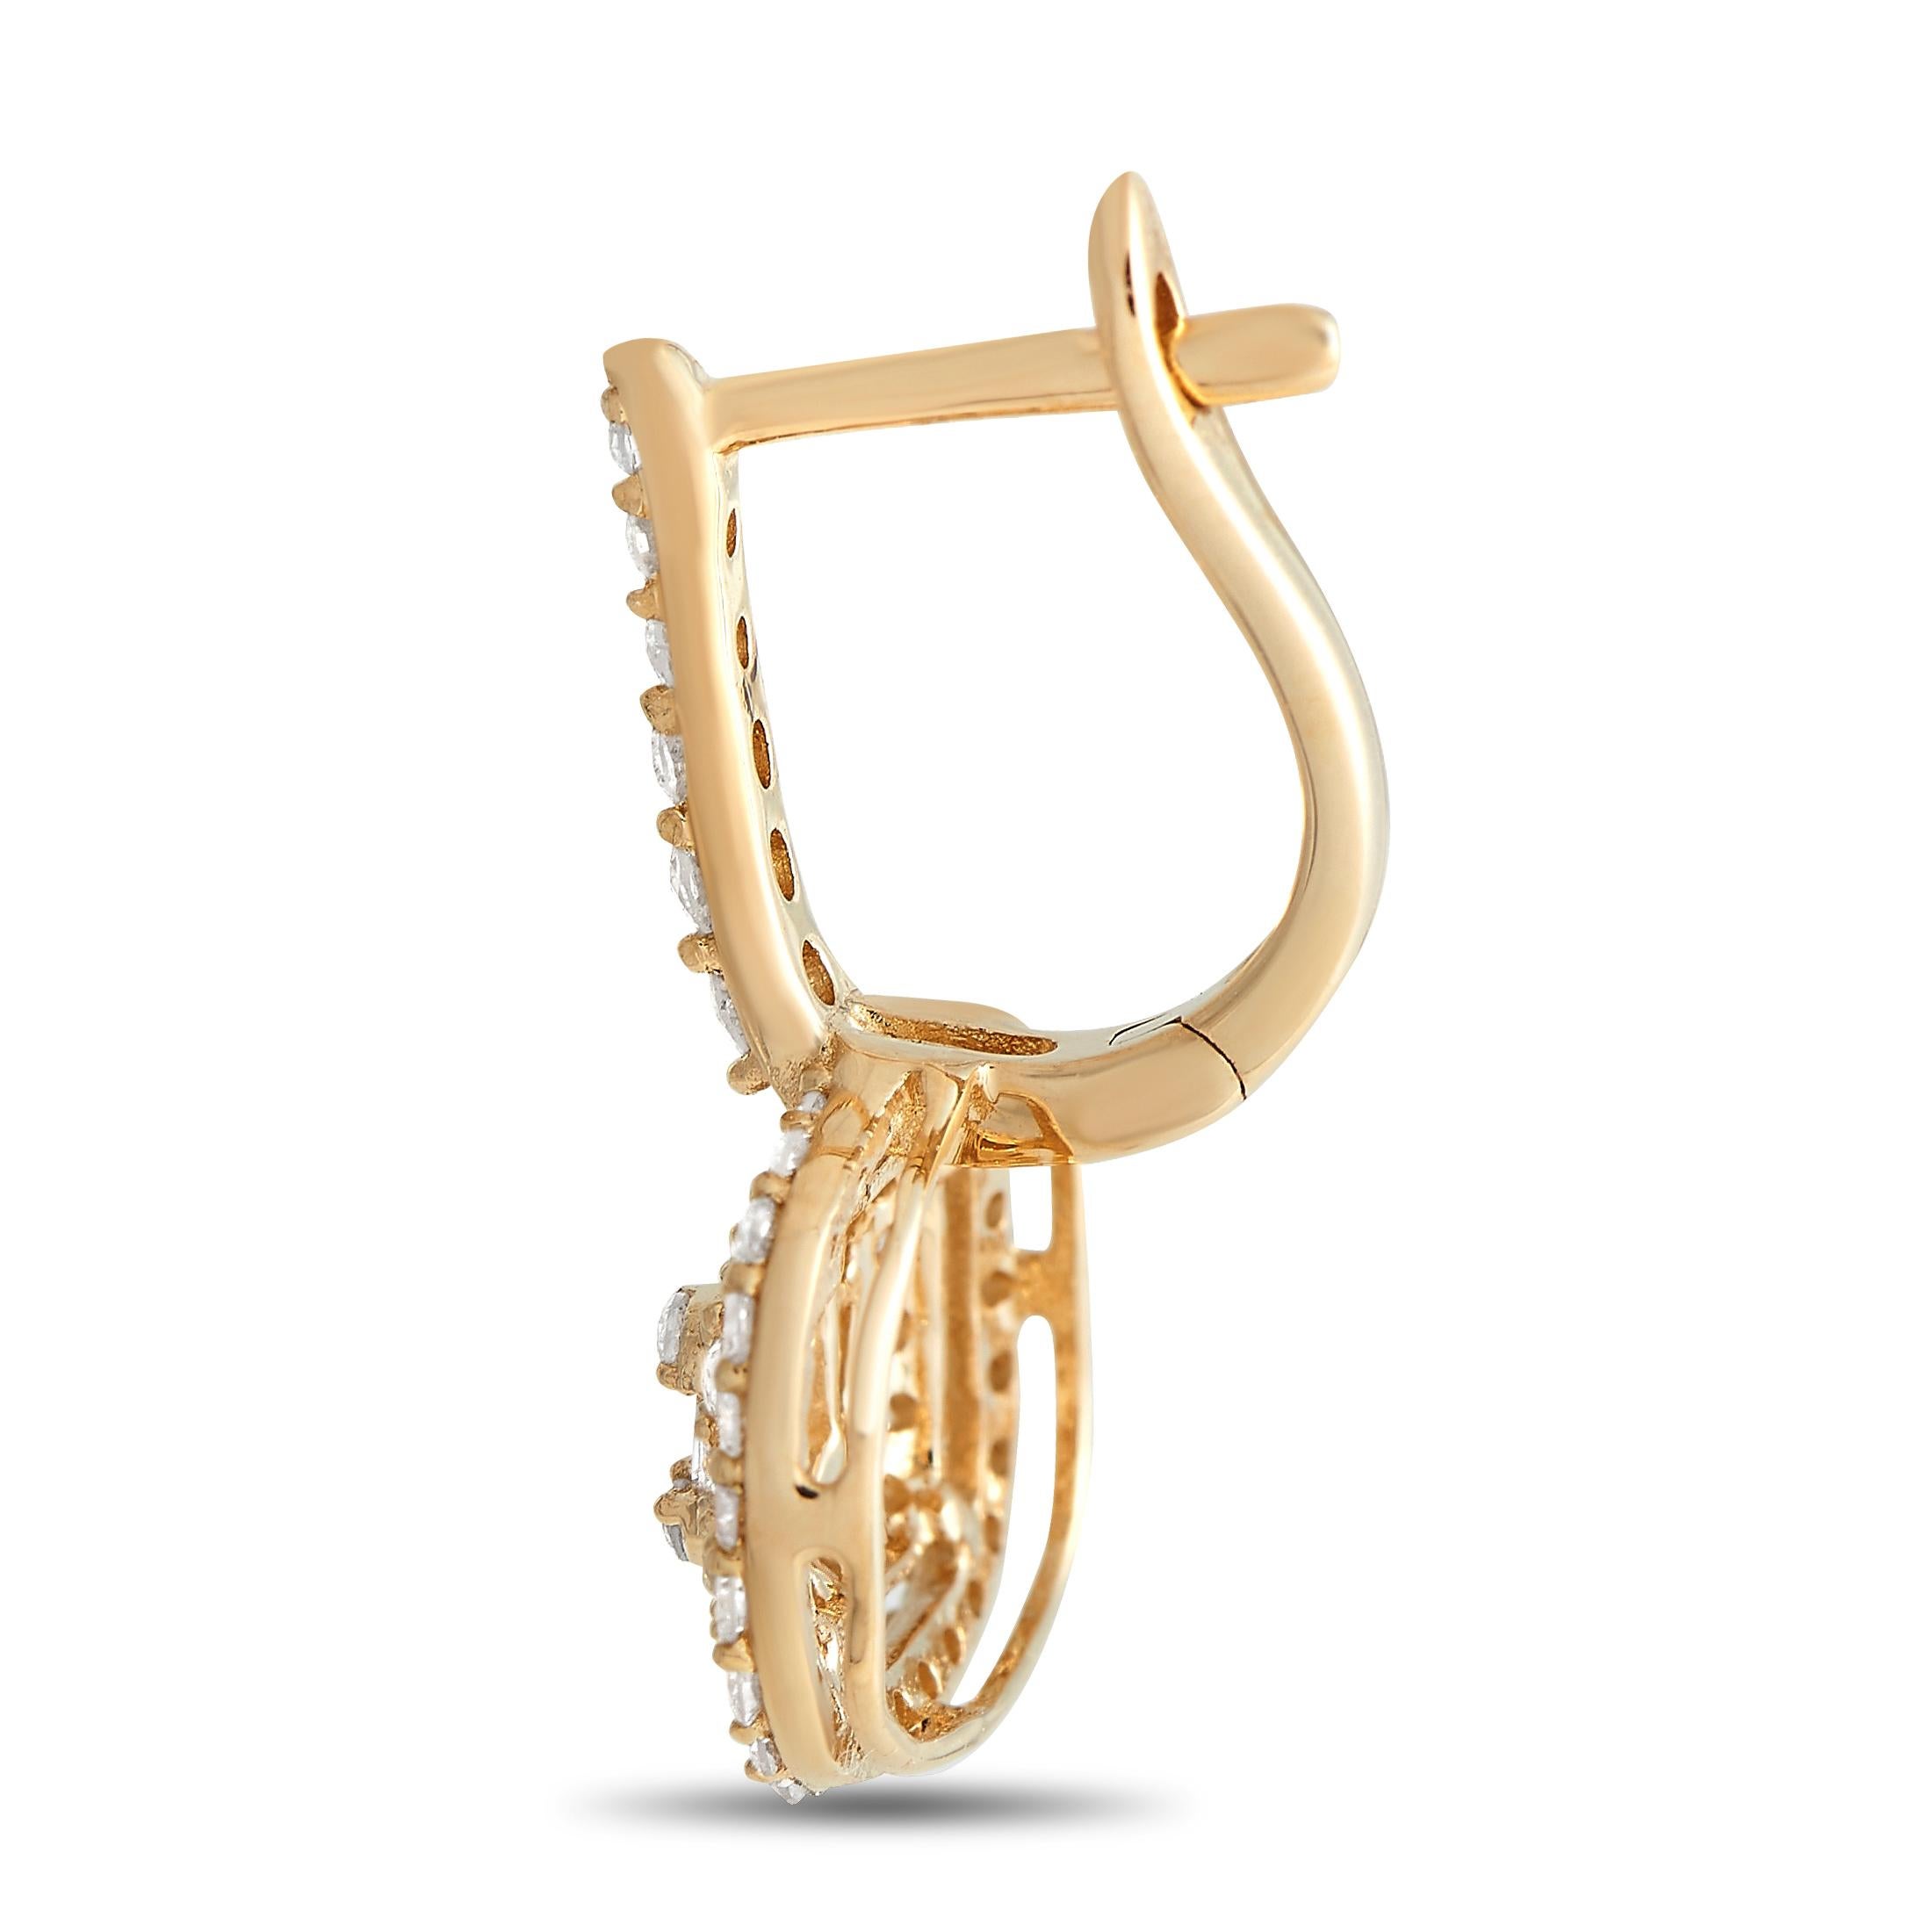 Detaillierte Metallarbeiten und eine aufwändige Fassung aus 14 Karat Gelbgold machen diese Ohrringe einfach unvergesslich. Funkelnde Diamanten mit einem Gesamtgewicht von 0,68 Karat veredeln dieses aufregende Design. Jeder Ohrring ist 0,75